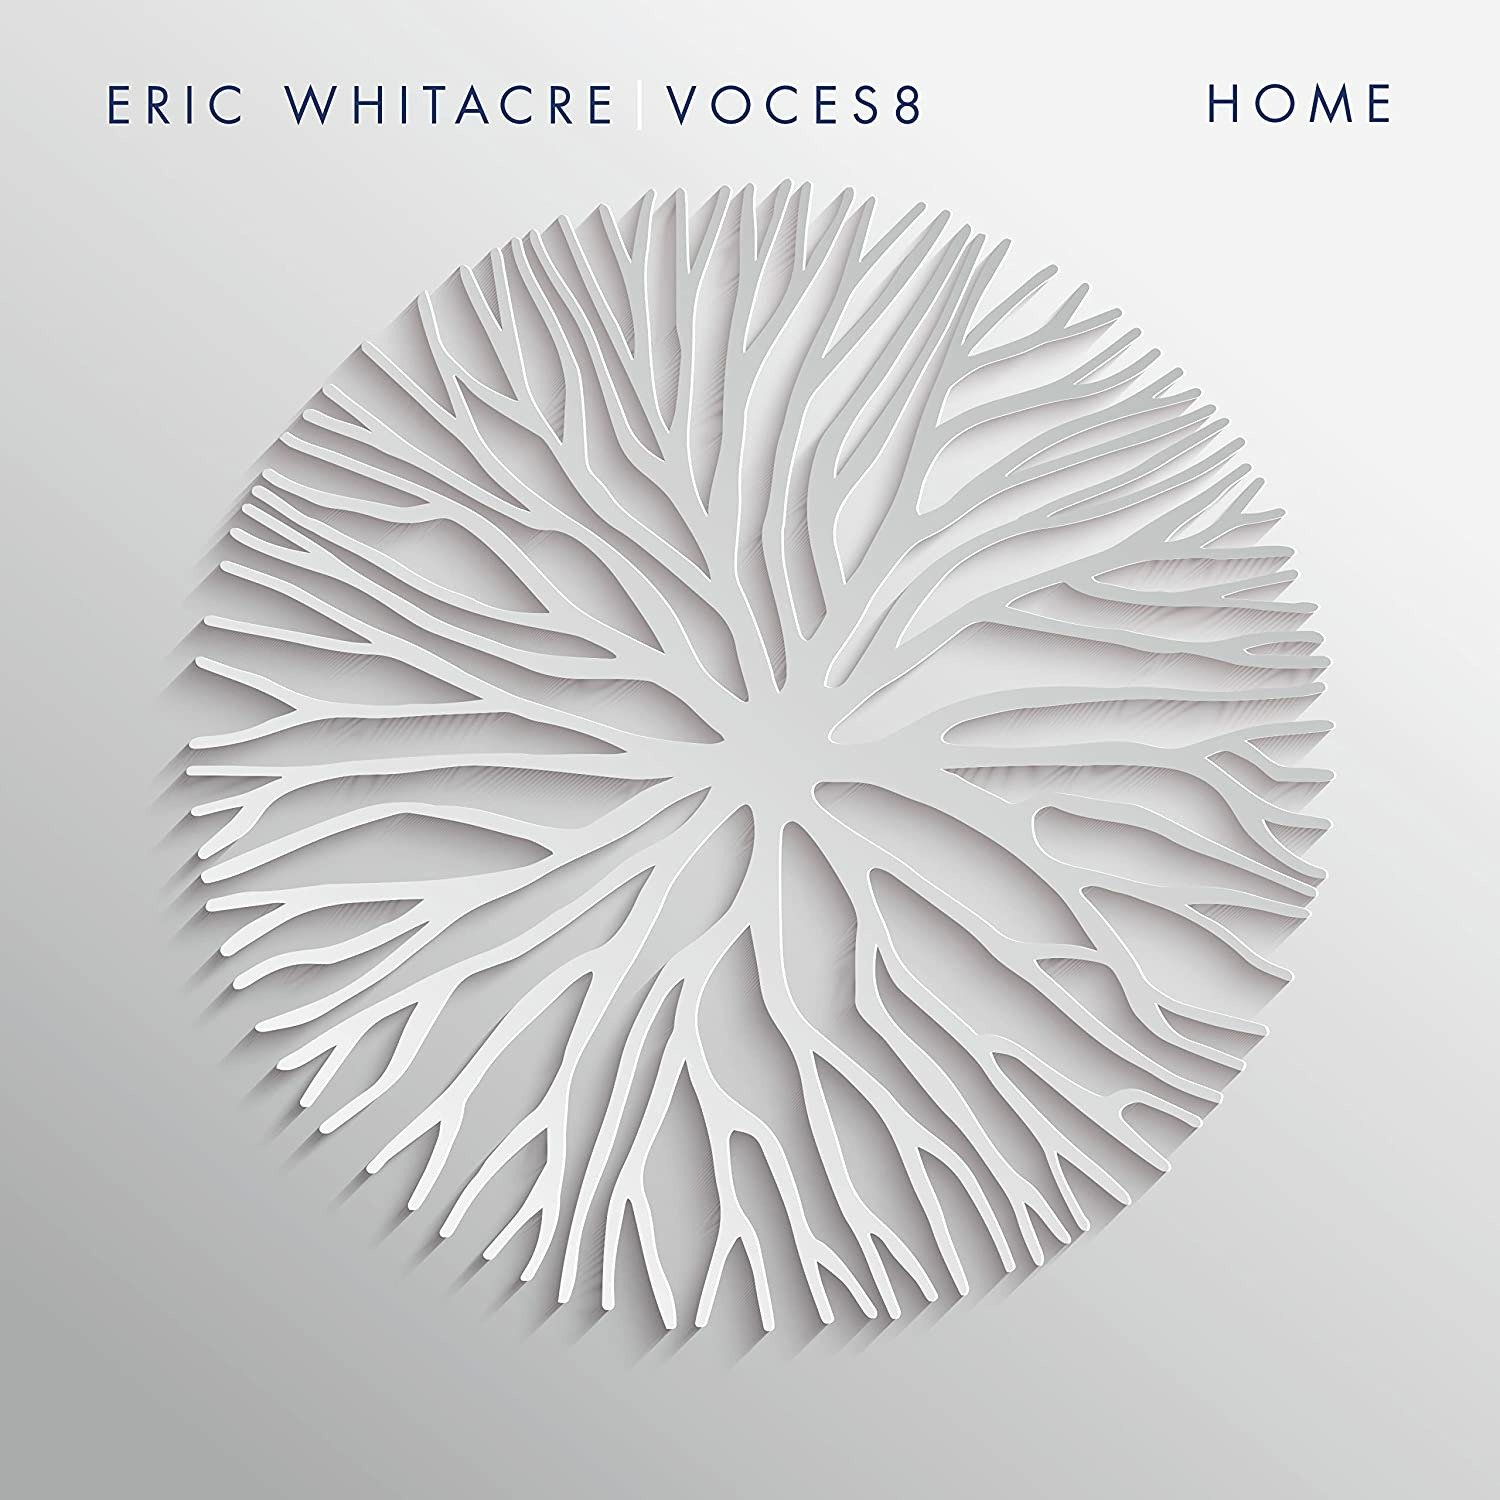 CD Shop - VOCES8 & ERIC WHITACRE HOME